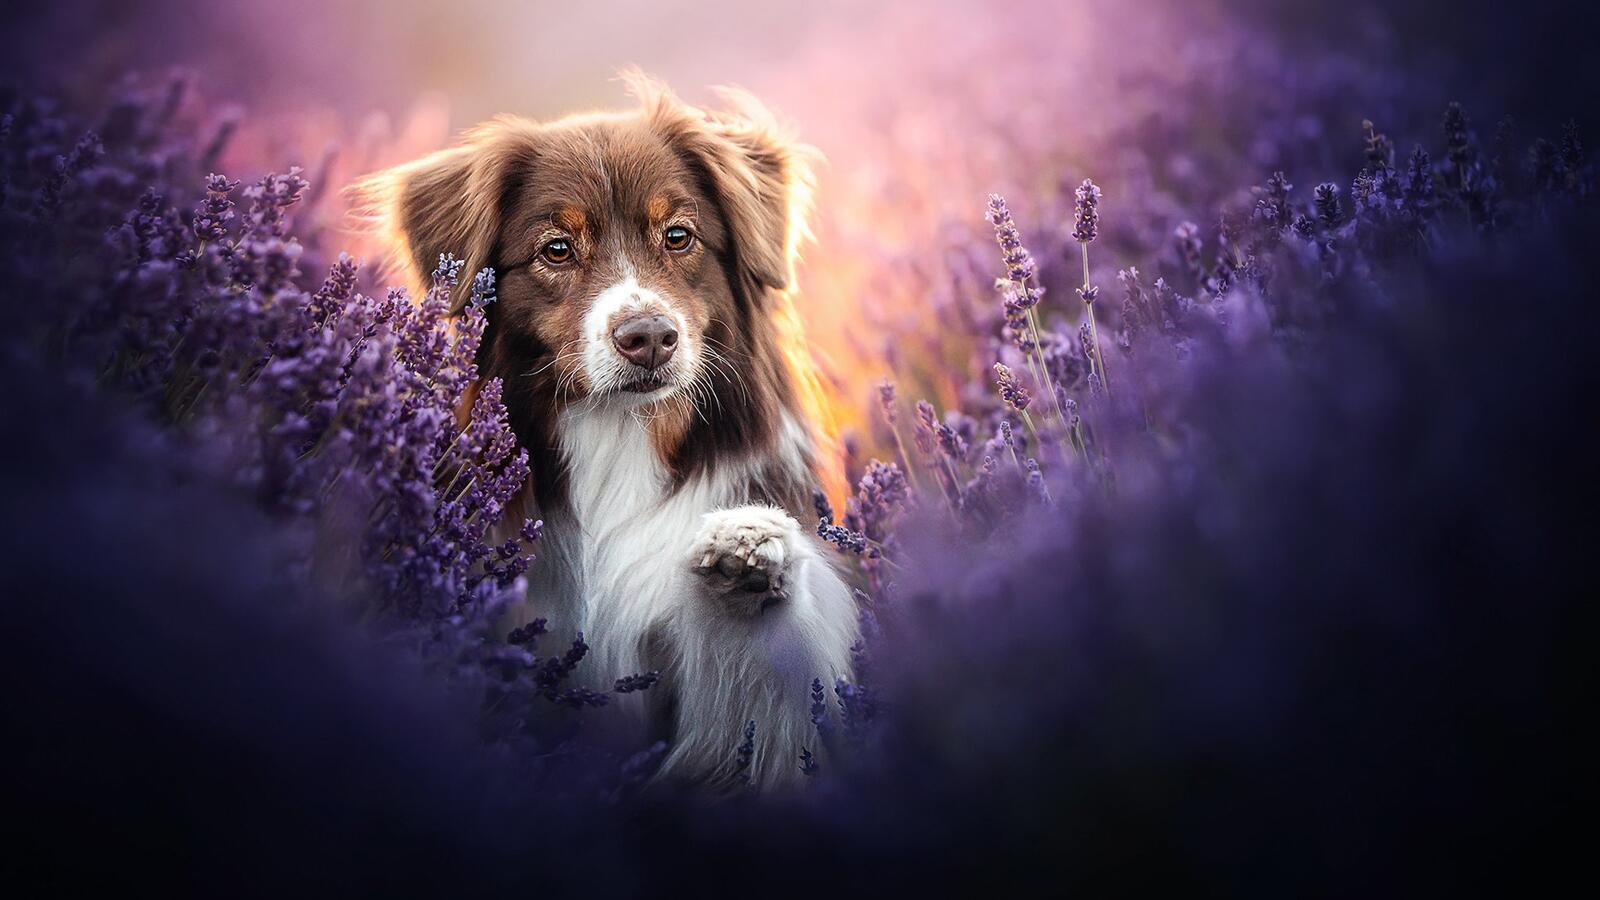 Free photo Australian shepherd dog wallpaper in purple colors